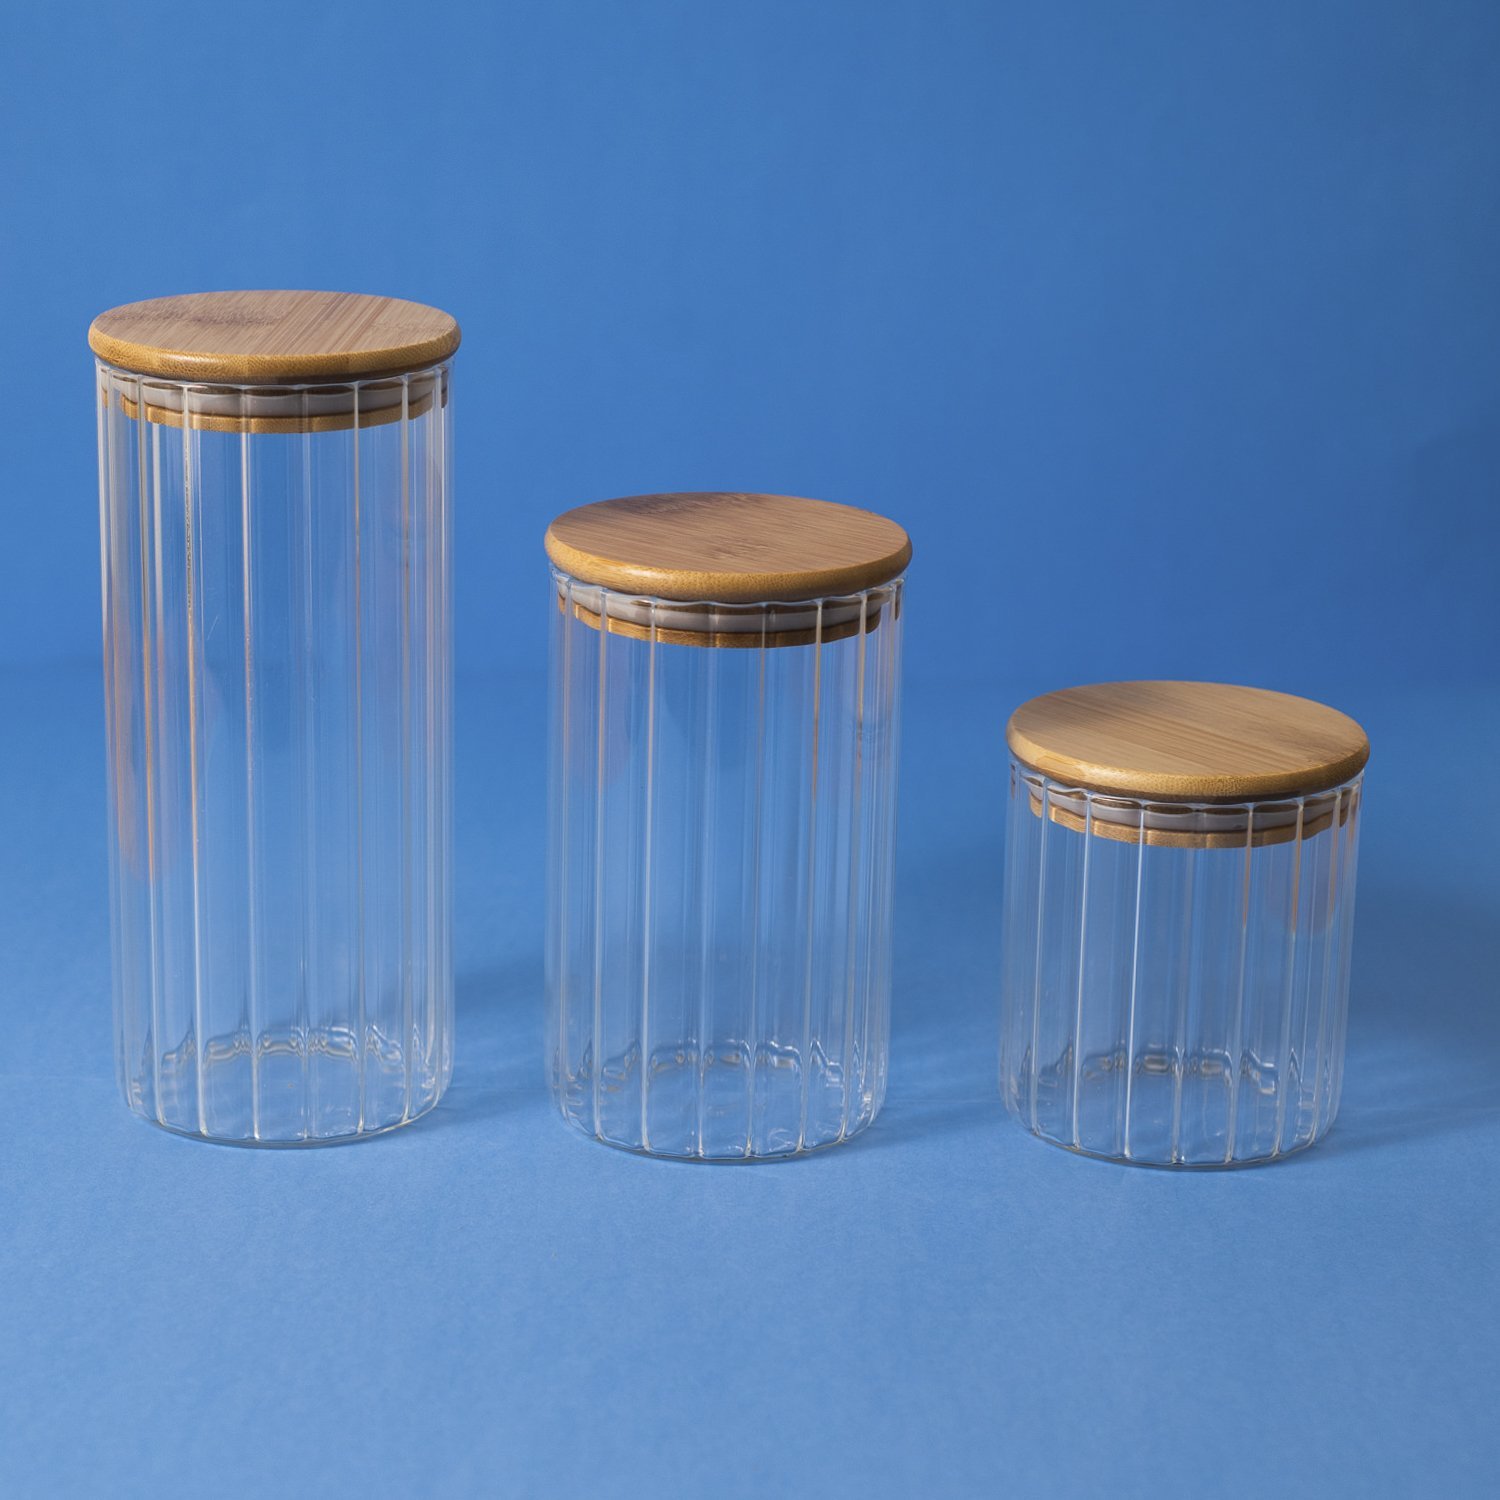 Pote 500ml de vidro canelado com tampa de bambu de mantimento - Oikos - 4